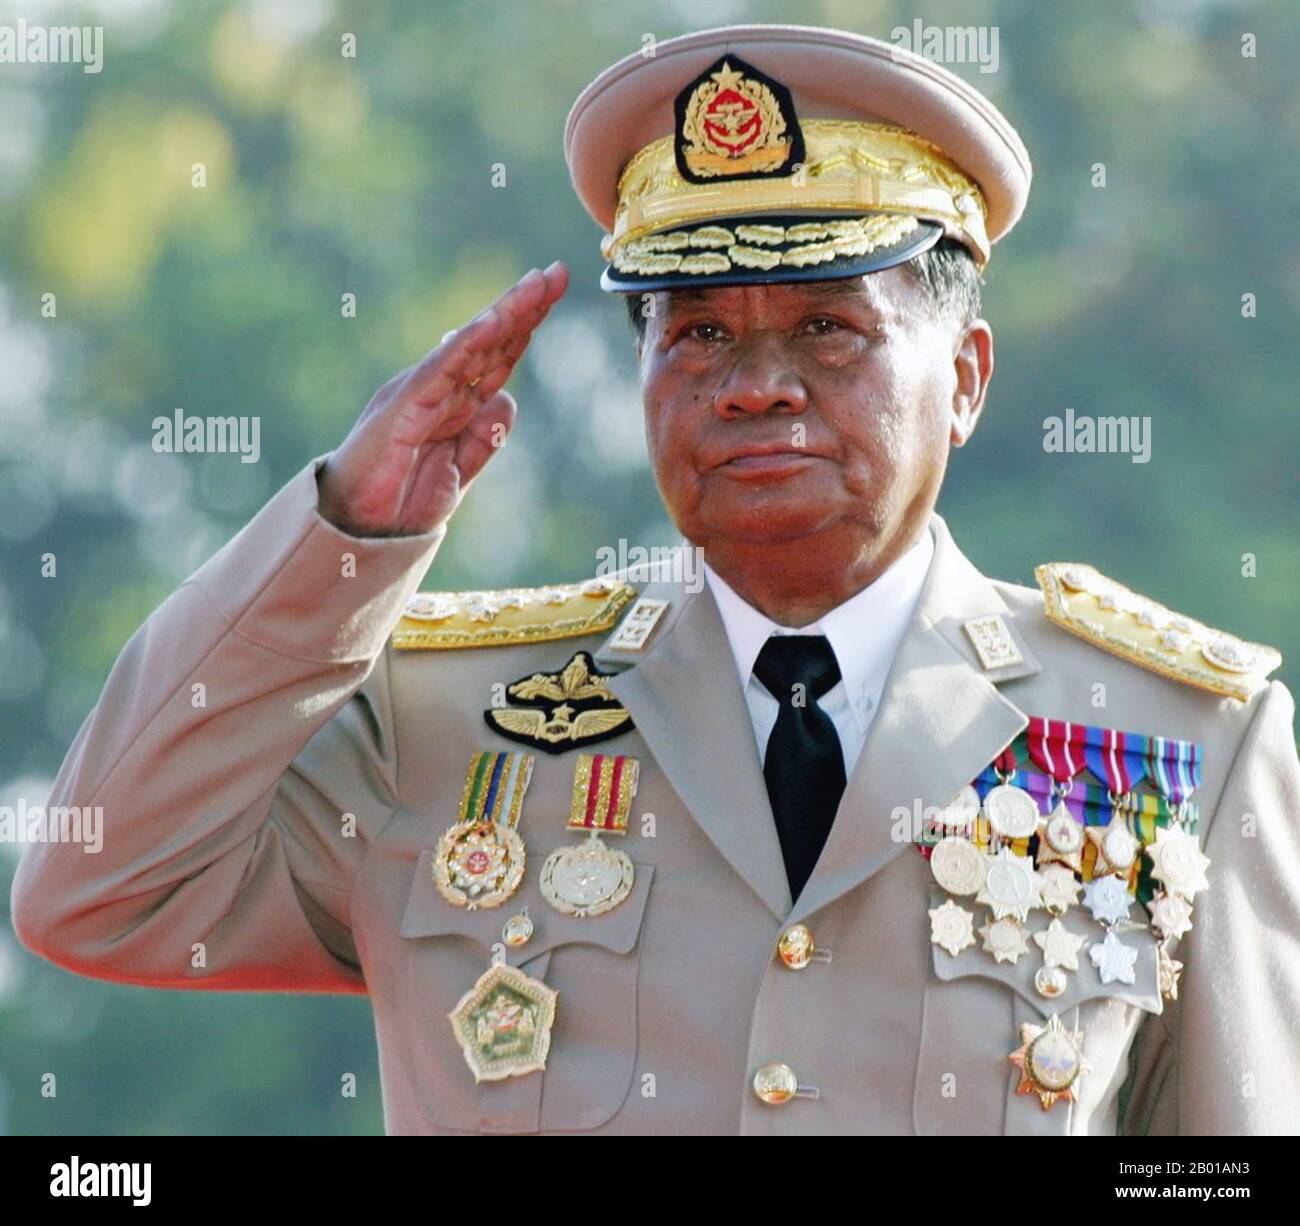 Birmania/Myanmar: Than Shwe (3 de febrero de 1933- ), Presidente del Consejo Estatal de Paz y Desarrollo de Myanmar, 1992-2011. El General Than Shwe es un dirigente militar y político birmano que fue presidente del Consejo Estatal de Paz y Desarrollo (SPDC) de 1992 a 2011. Durante el período, ocupó cargos clave en el poder, incluido el de comandante en jefe de las Fuerzas Armadas de Myanmar (Tatmadaw) y jefe de la Asociación de Solidaridad Sindical y Desarrollo. En 2011, renunció oficialmente a su cargo de jefe de estado, a favor de su sucesor, Thein Sein. Foto de stock